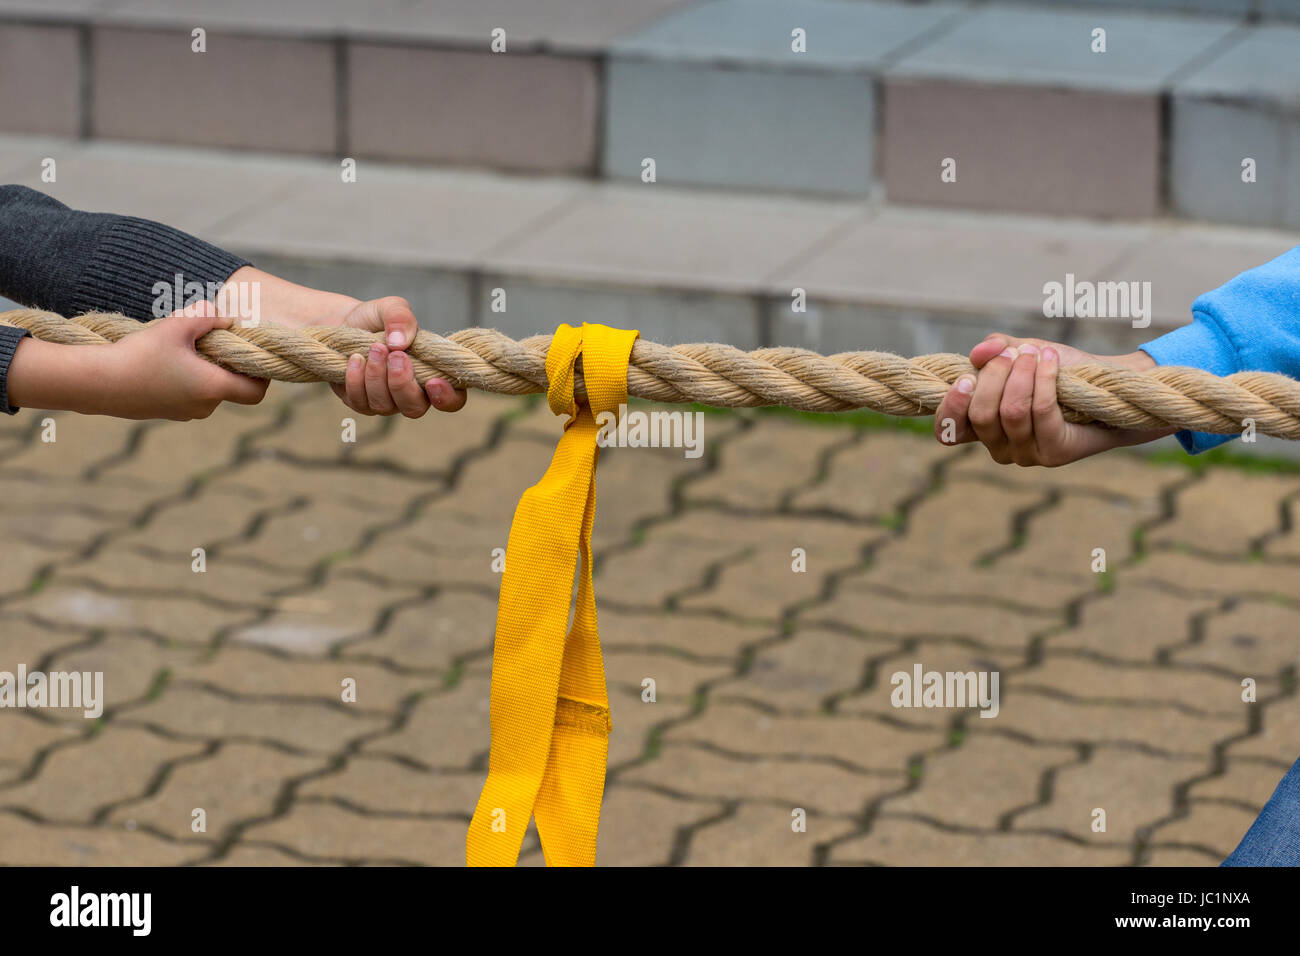 Los niños tirando de la cuerda - cierre en manos de jóvenes competidores Foto de stock